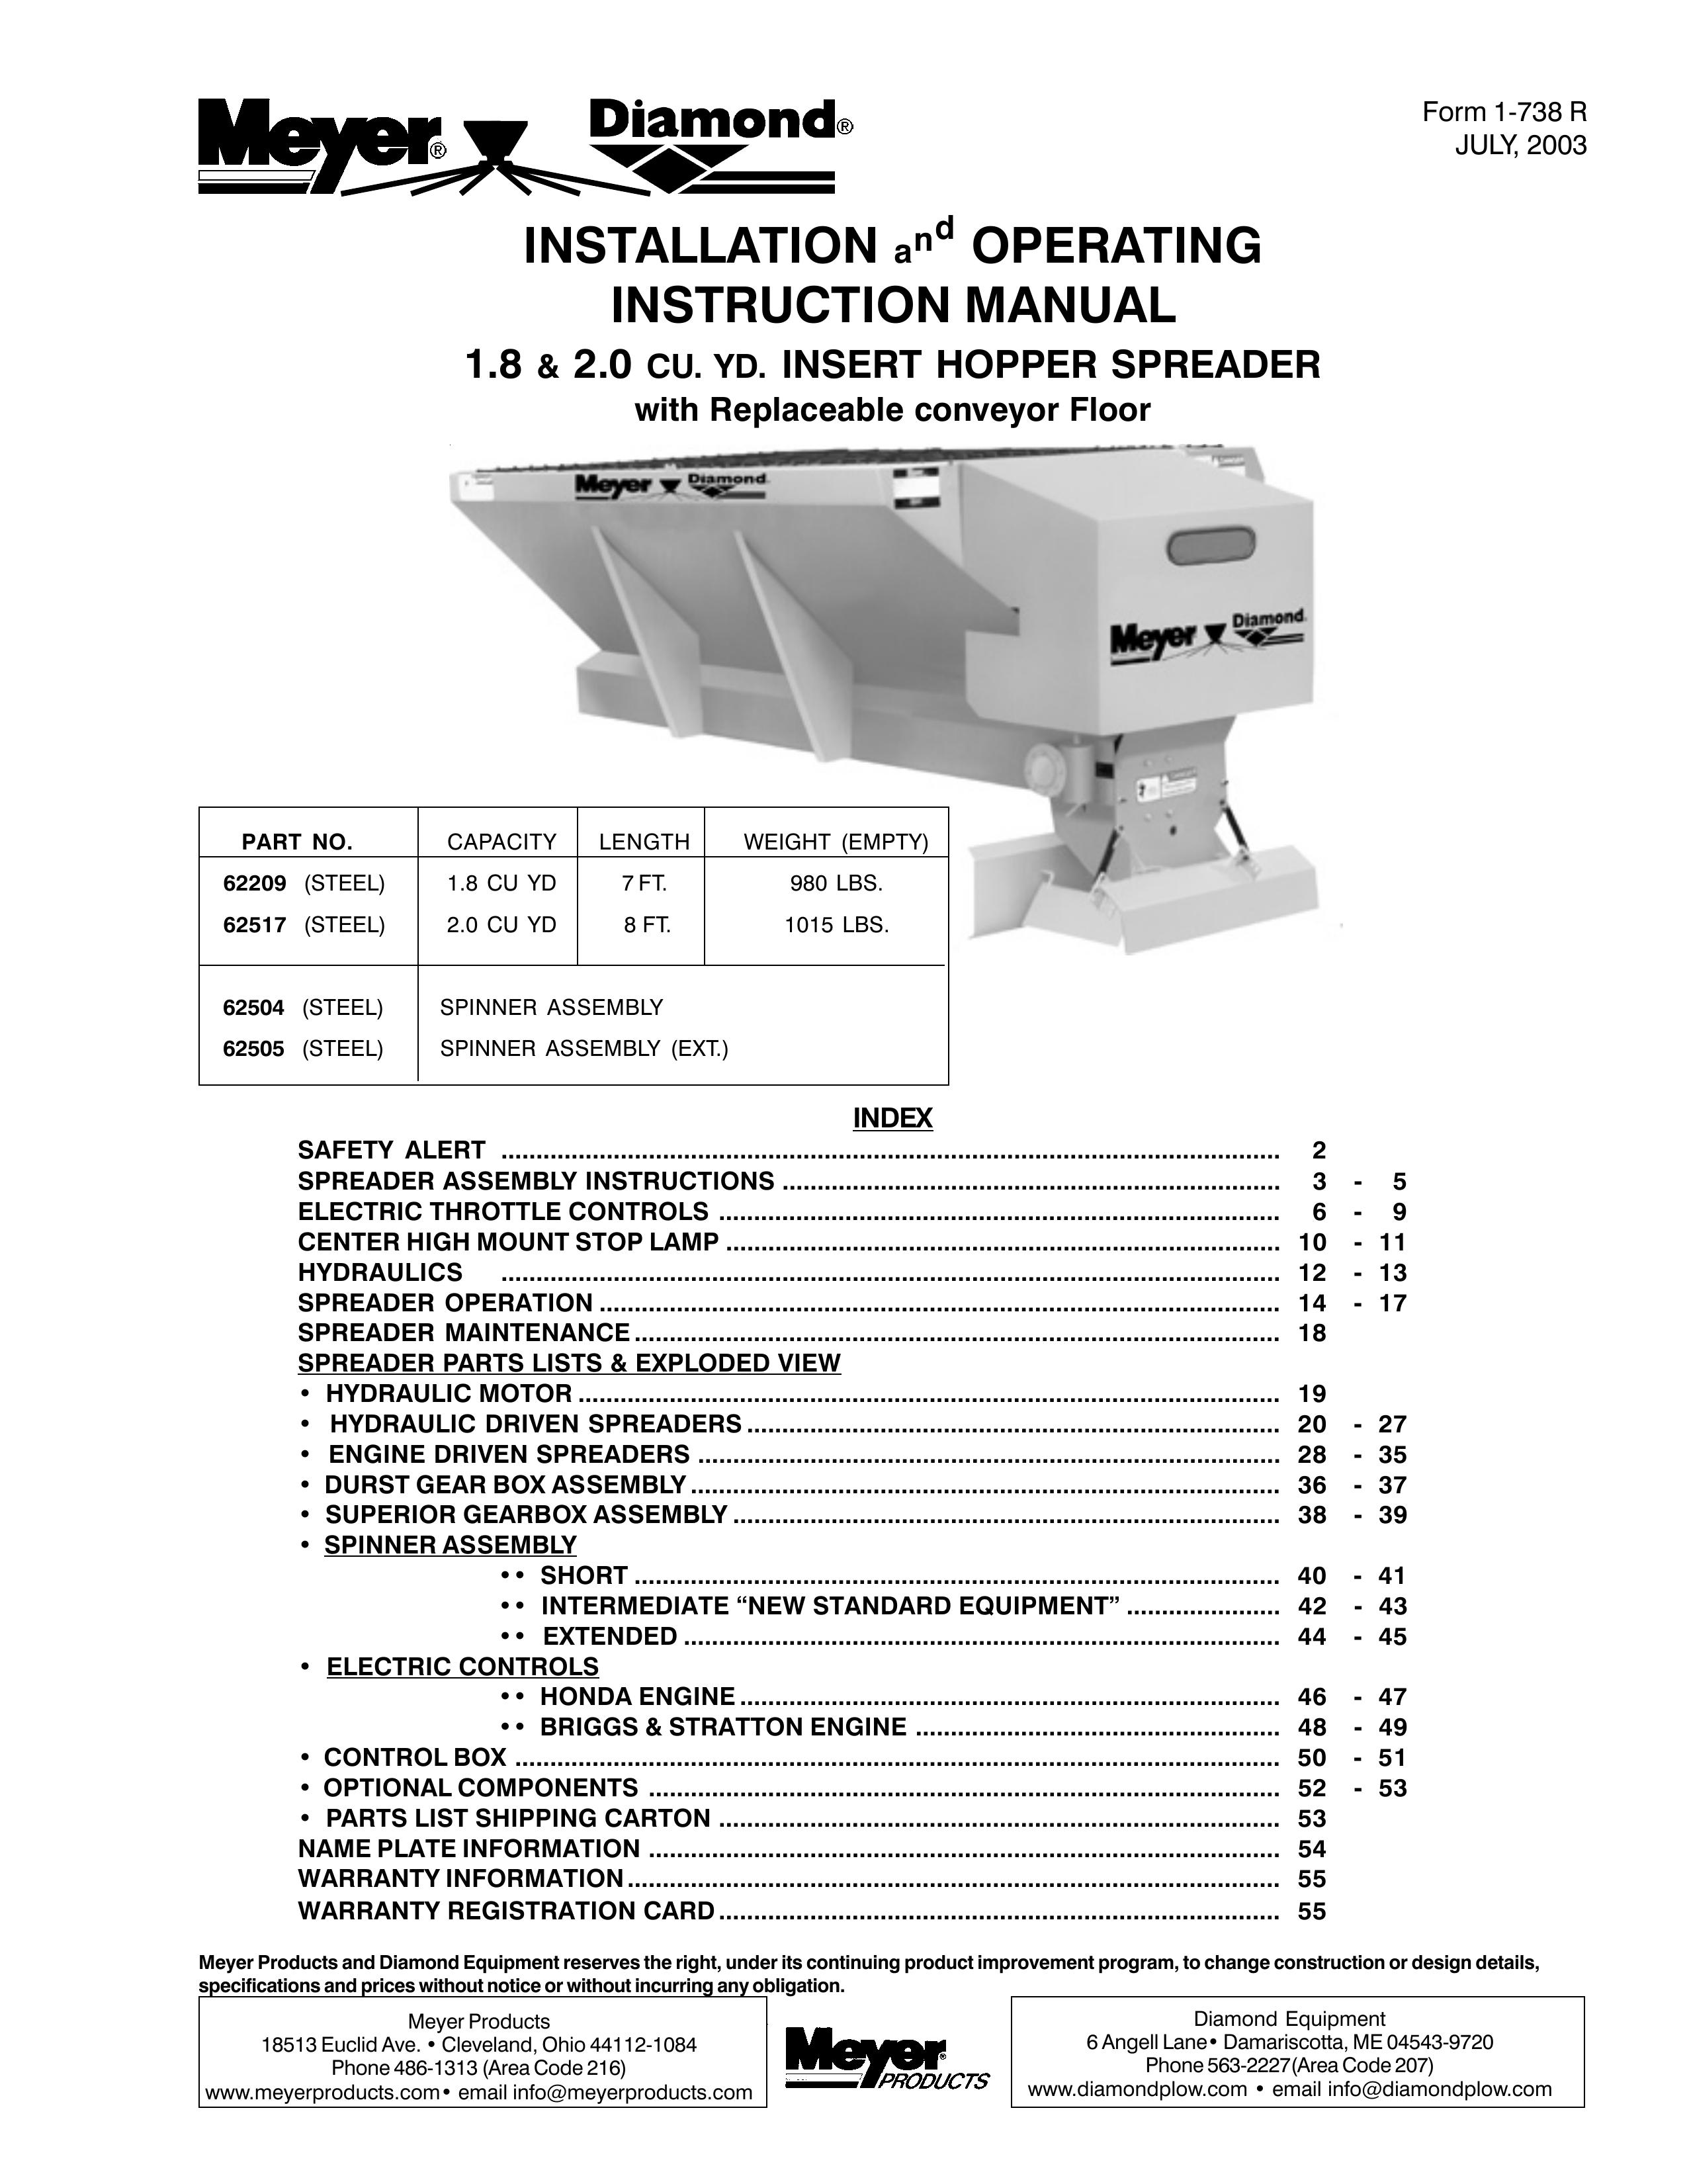 Meyer 62517 Spreader User Manual